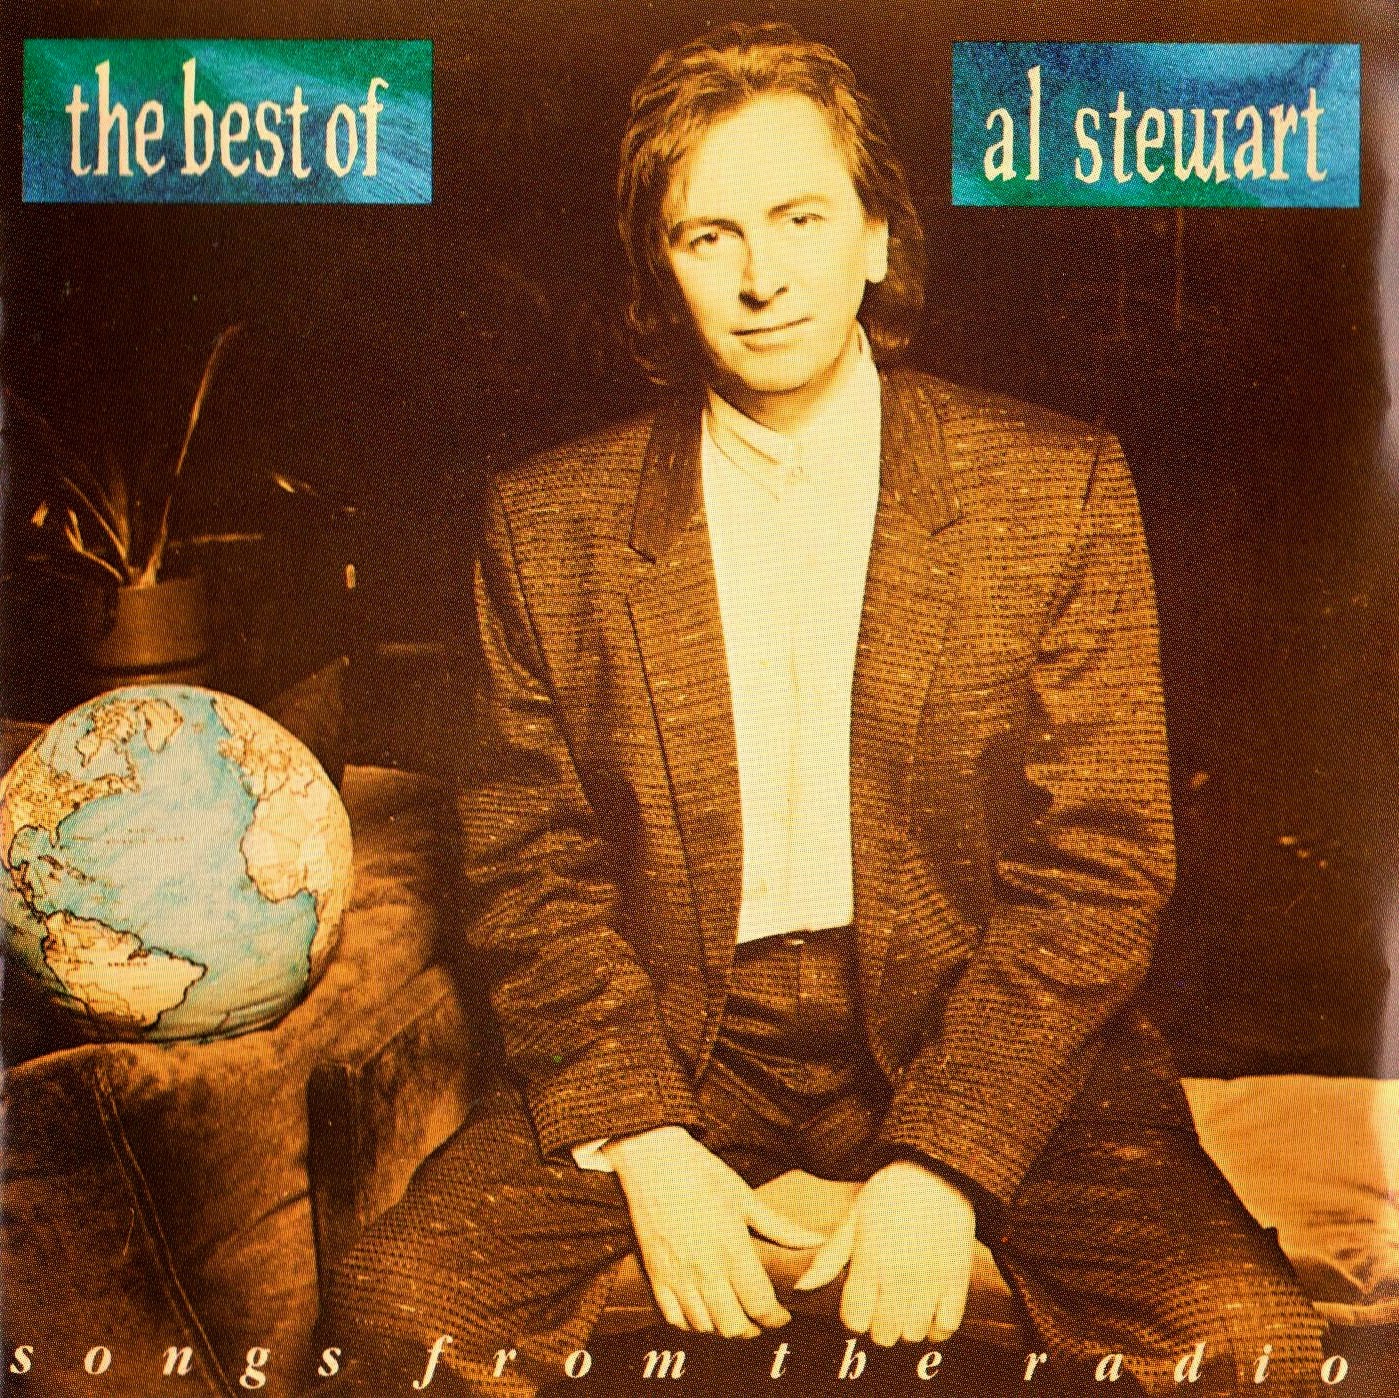 Al stewart greatest hits rar